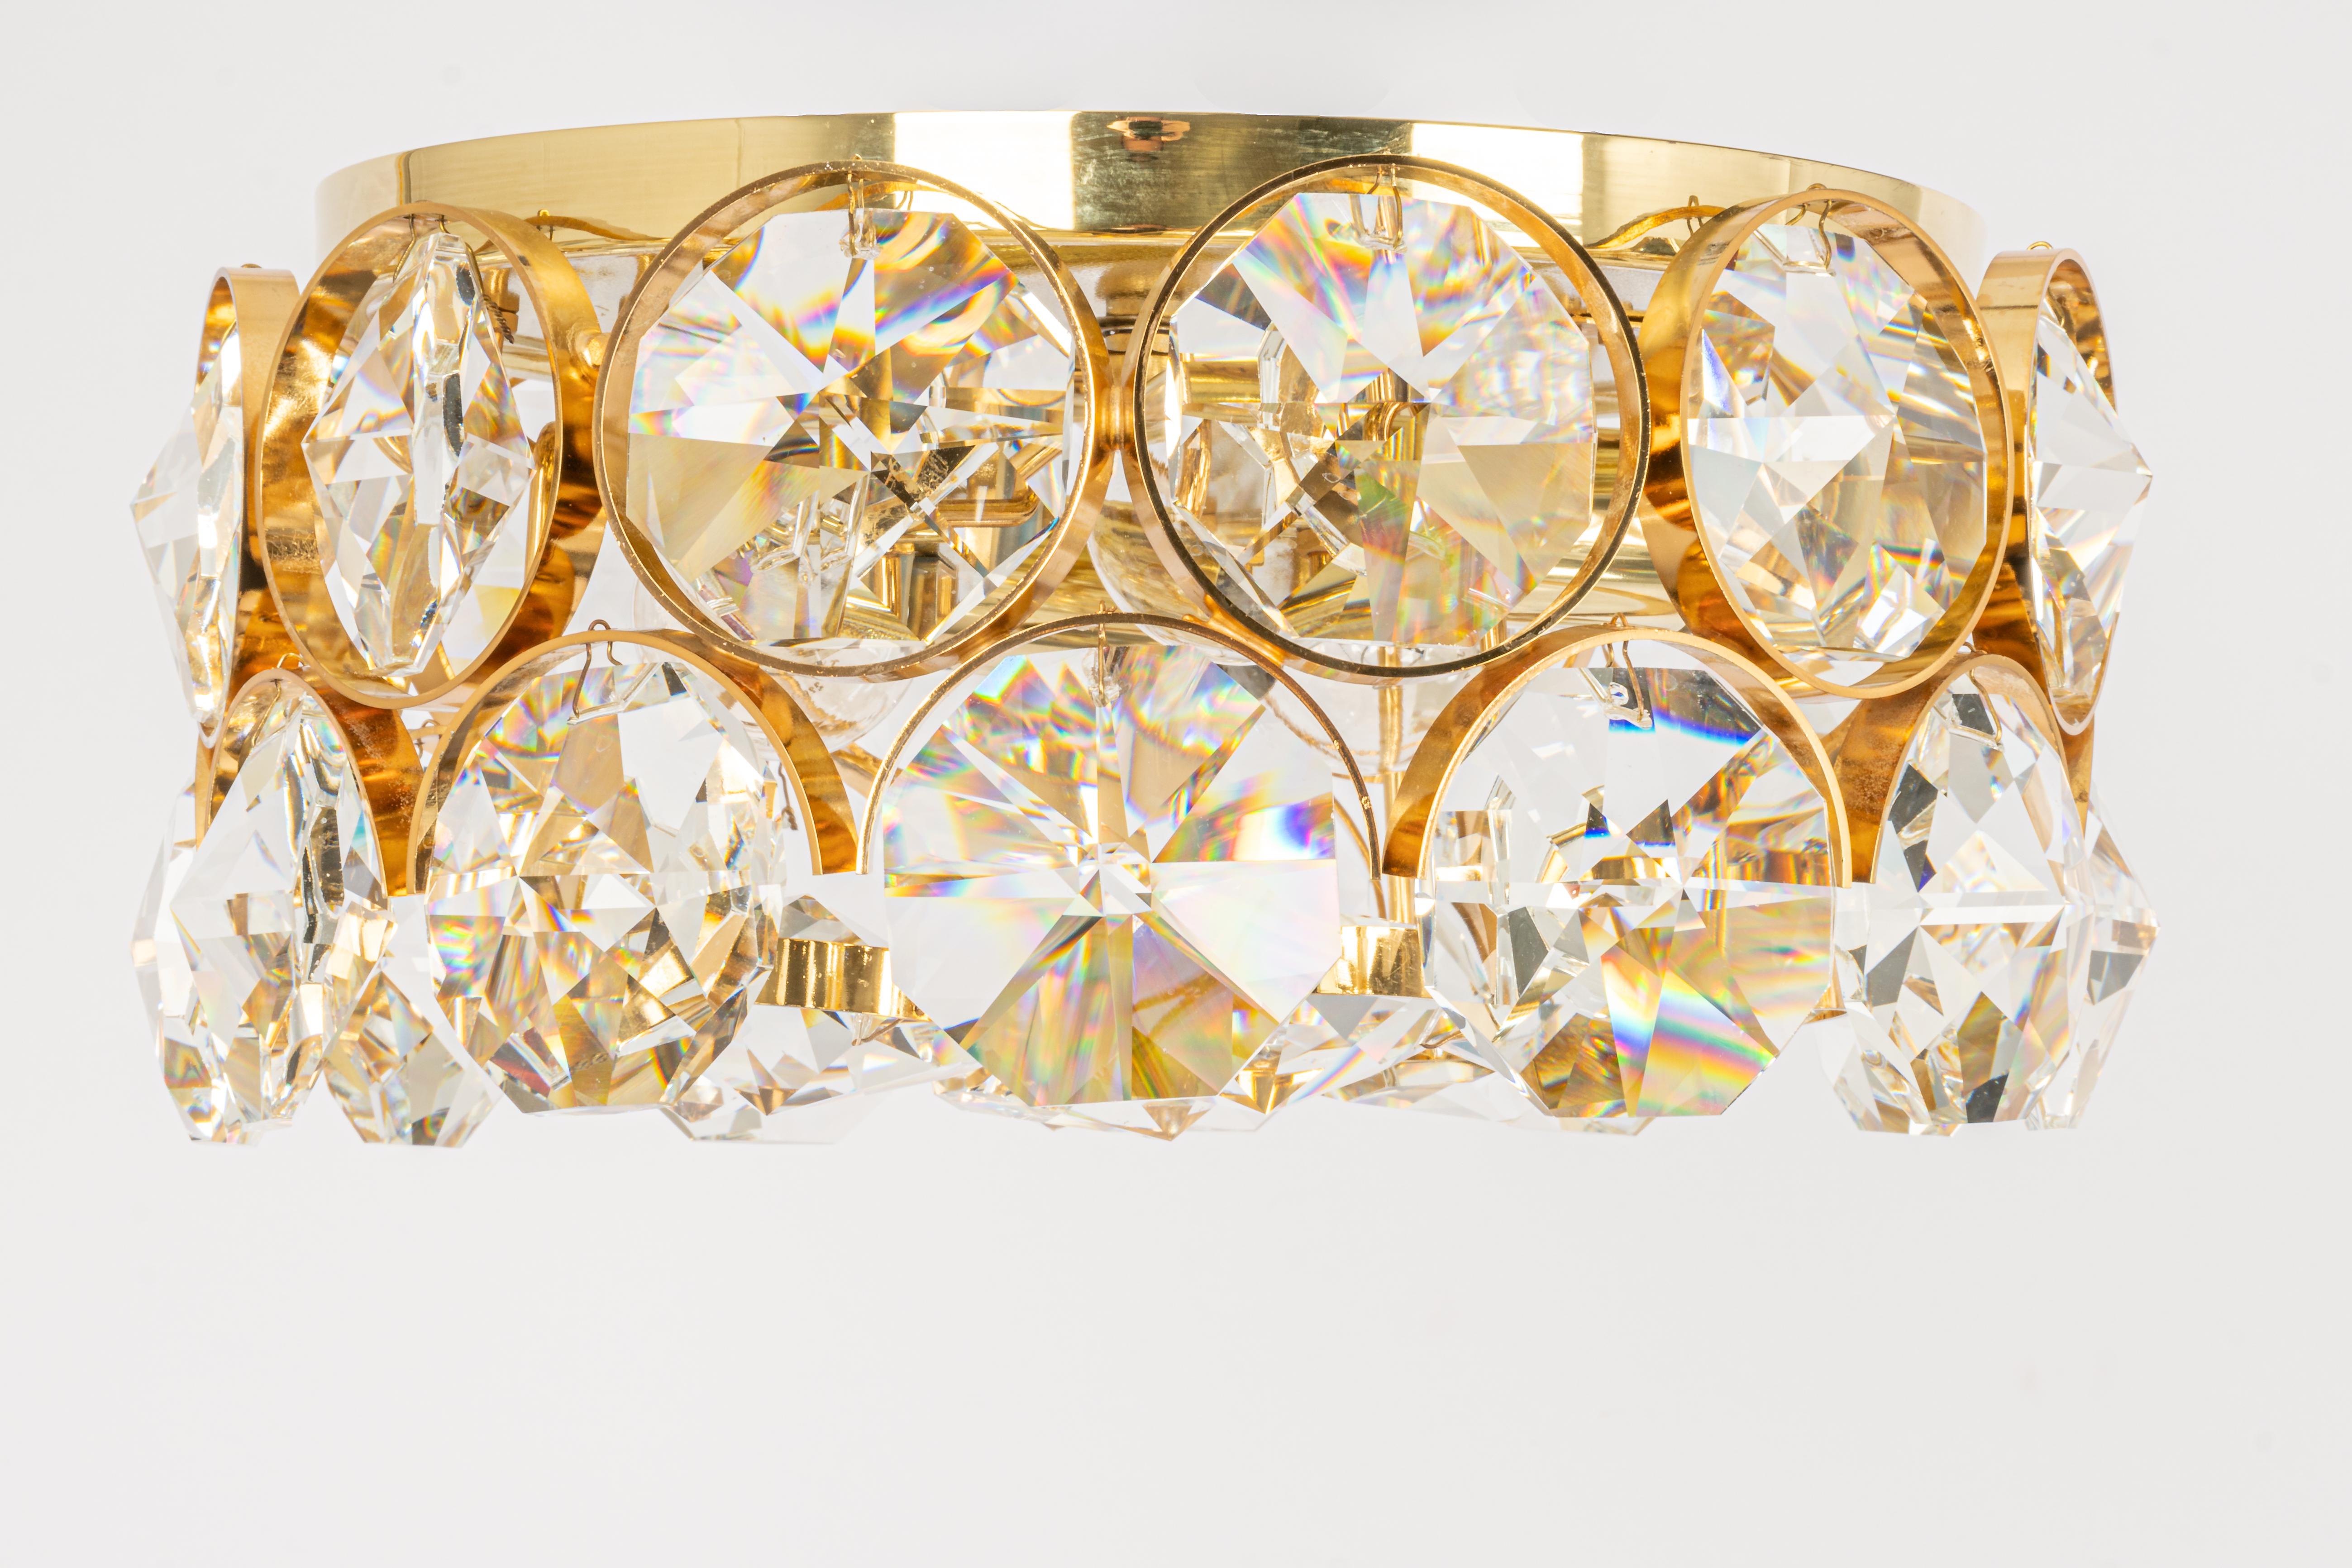 Magnifique luminaire encastré doré de grande qualité de Palwa, Allemagne, années 1970.
Il est composé d'un cadre en laiton plaqué or 24 carats, décoré de cristaux individuels semblables à des bijoux, enfermés dans des cercles individuels en laiton.